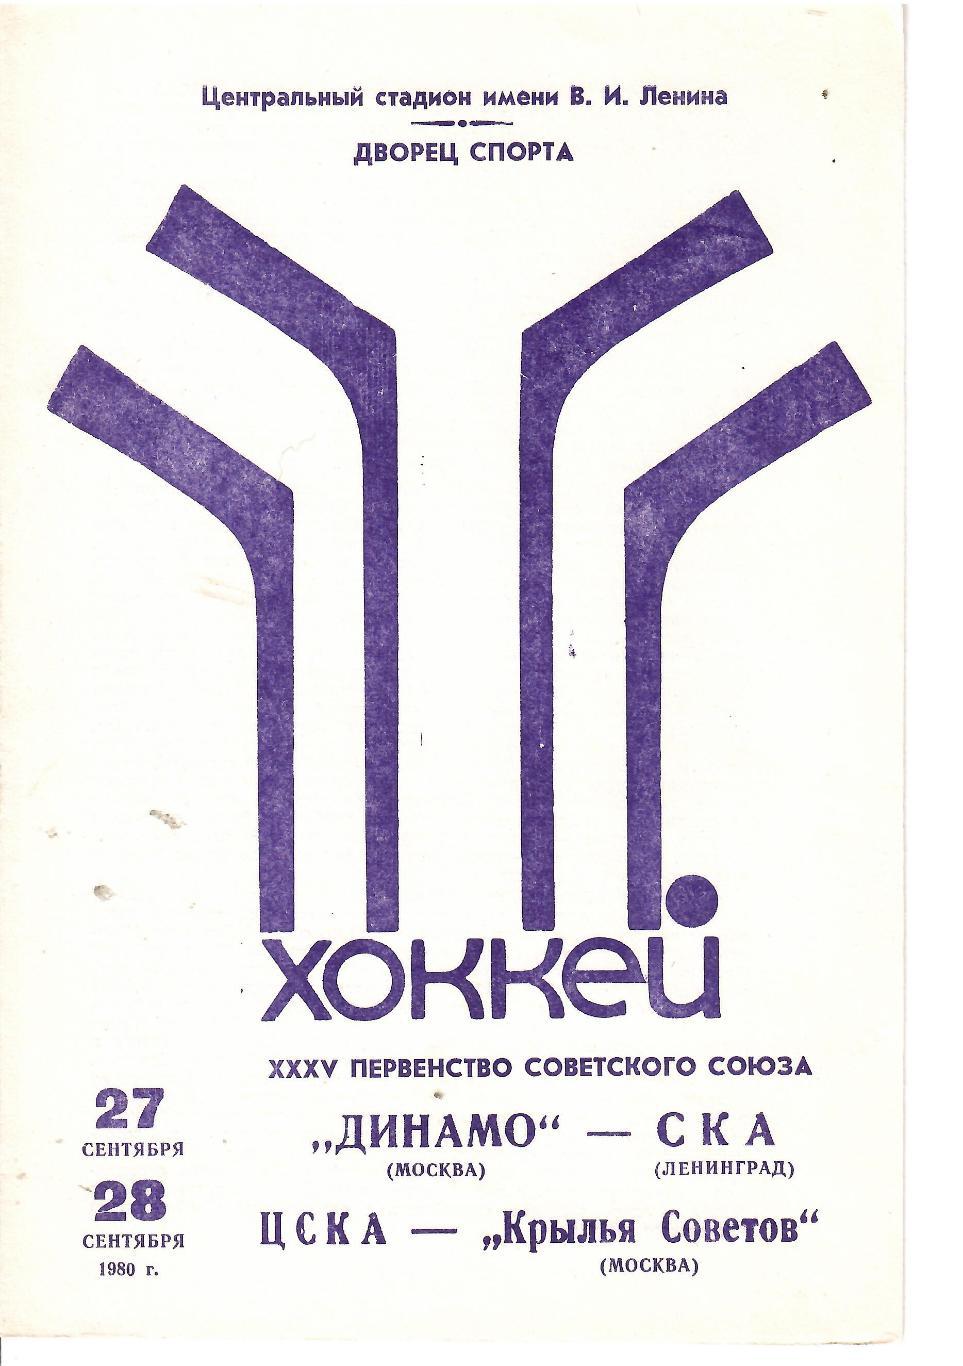 1980 Хоккей Динамо Москва - СКА Ленинград - ЦСКА - Крылья Советов